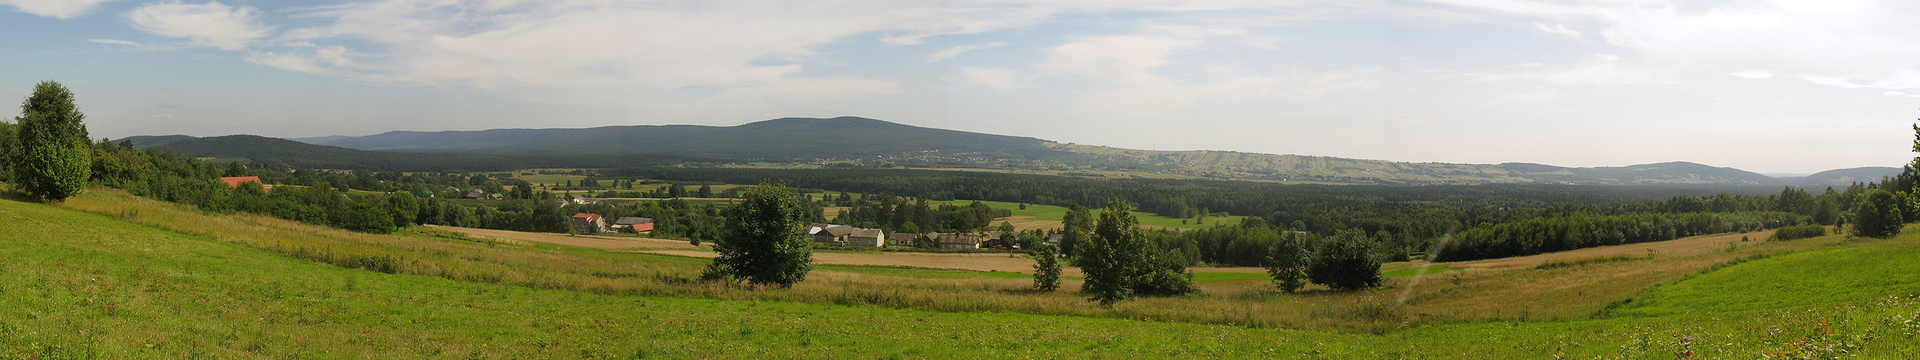 Druga fotografia , to krajobraz Gór Świętokrzyskich, widoczny teren falisty porośnięty trawą.